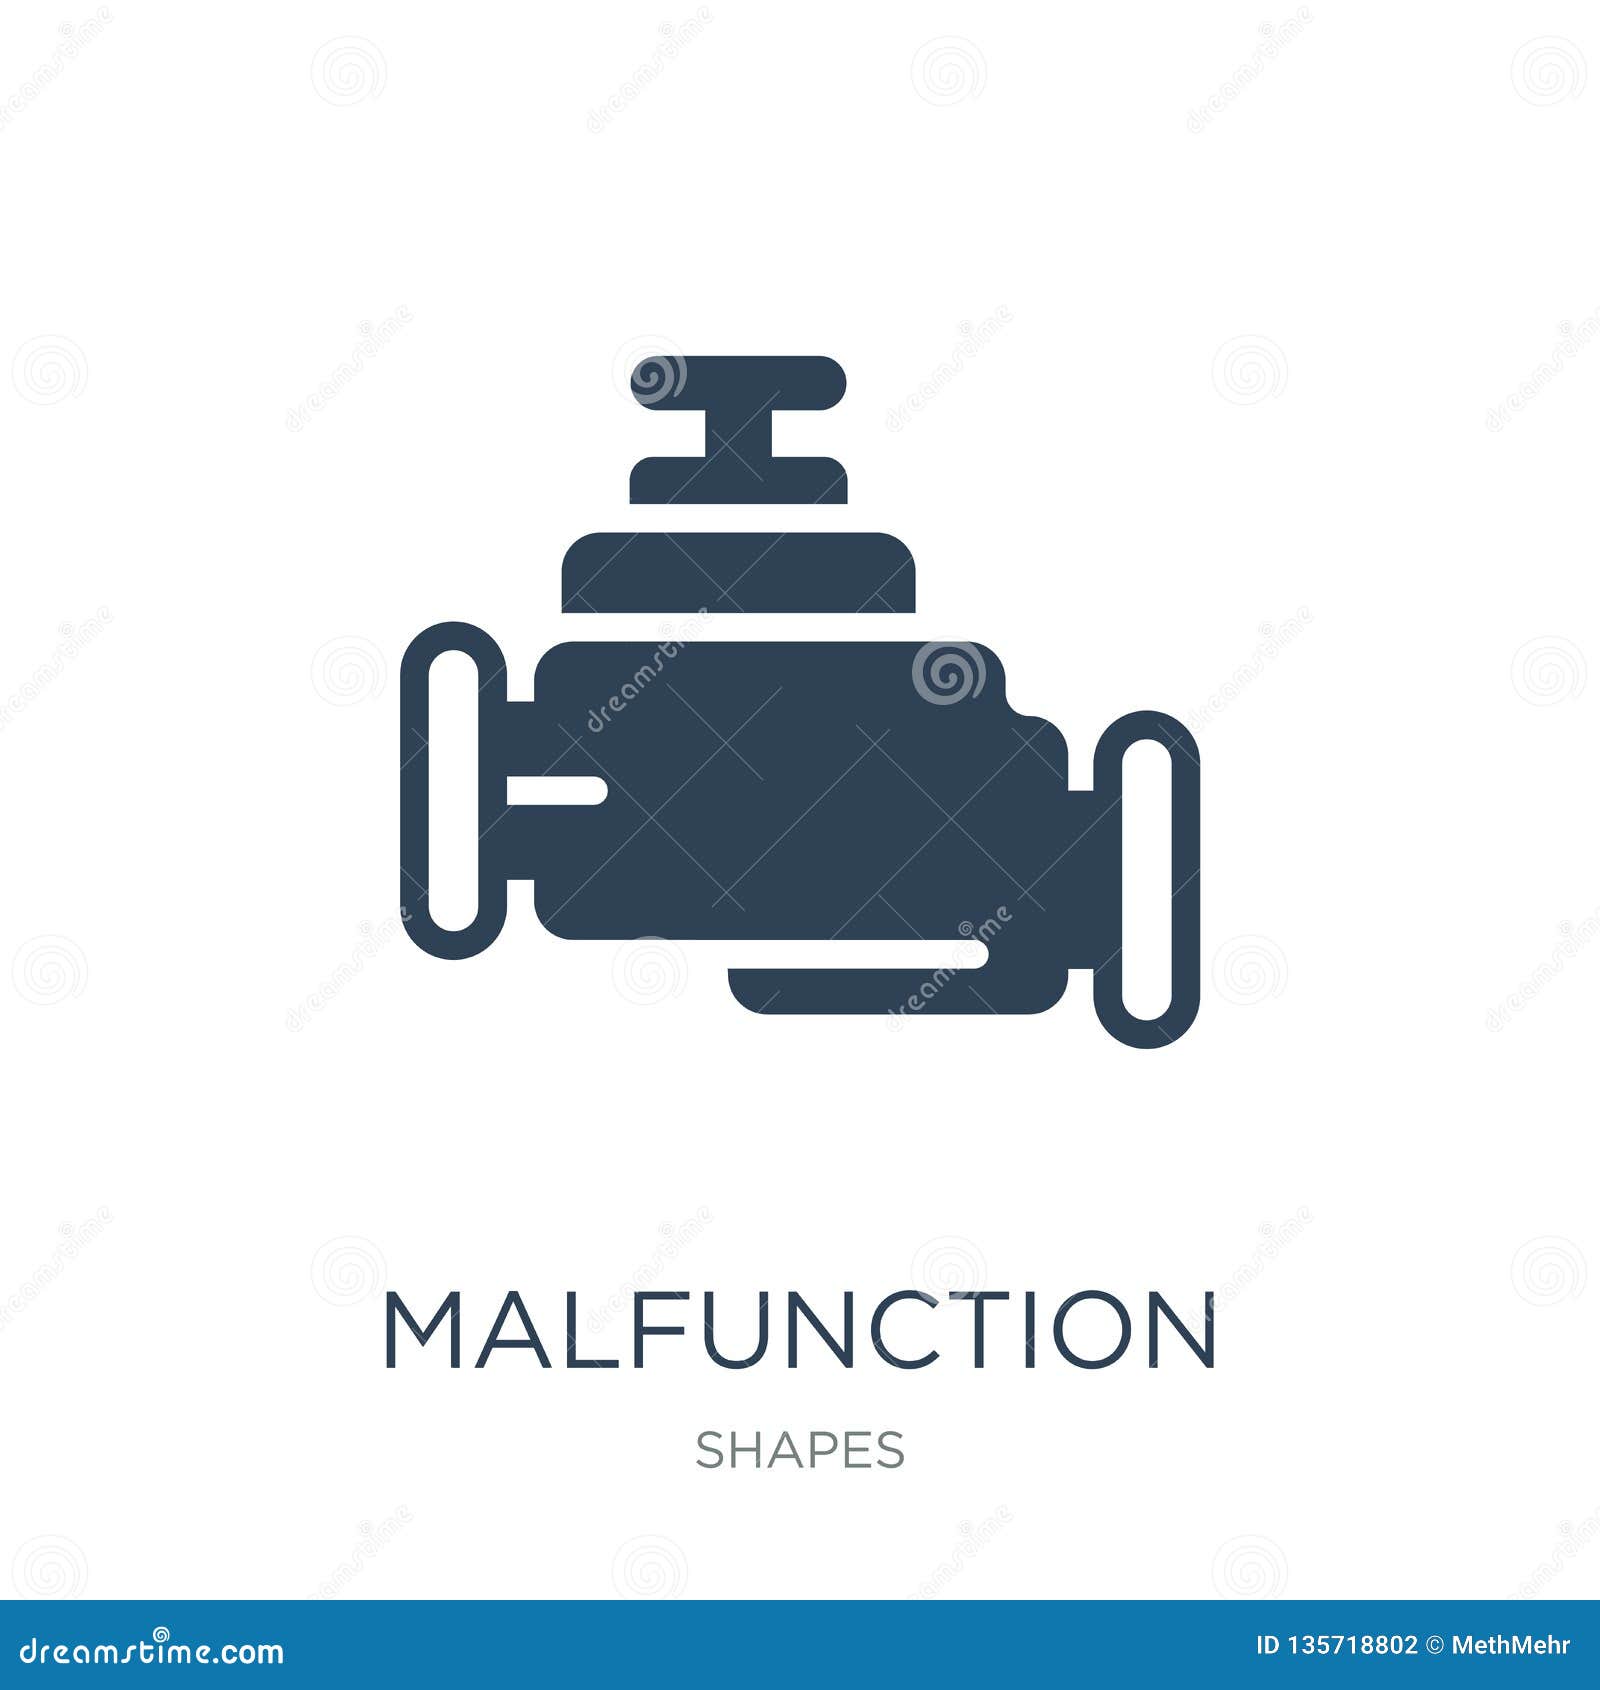 malfunction indicador icon in trendy  style. malfunction indicador icon  on white background. malfunction indicador